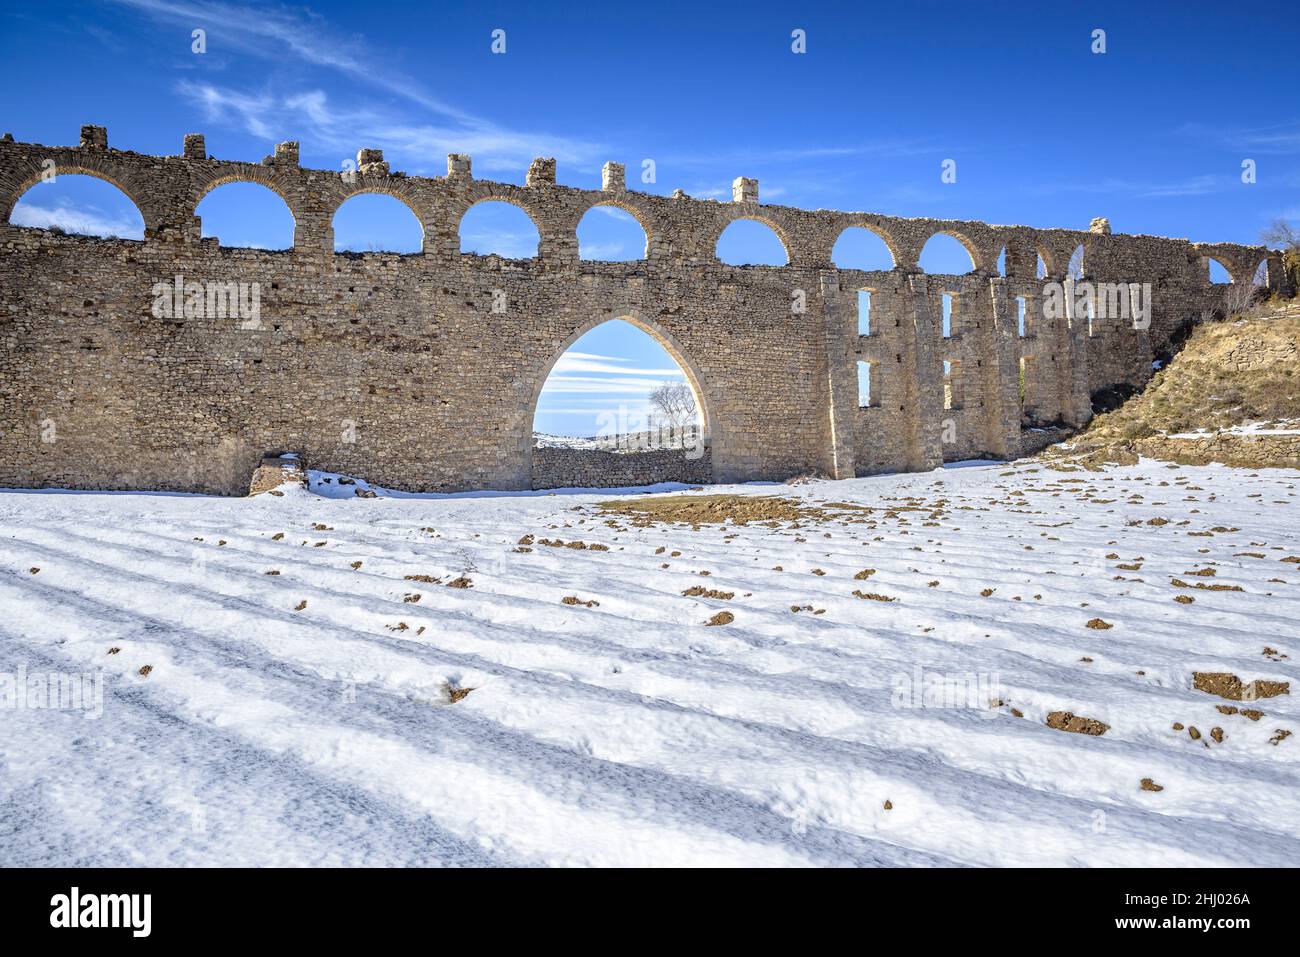 Morella aqueduct after a snowfall in winter (Castellón province, Valencian Community, Spain) ESP: Acueducto de Morella tras una nevada, Com Valenciana Stock Photo